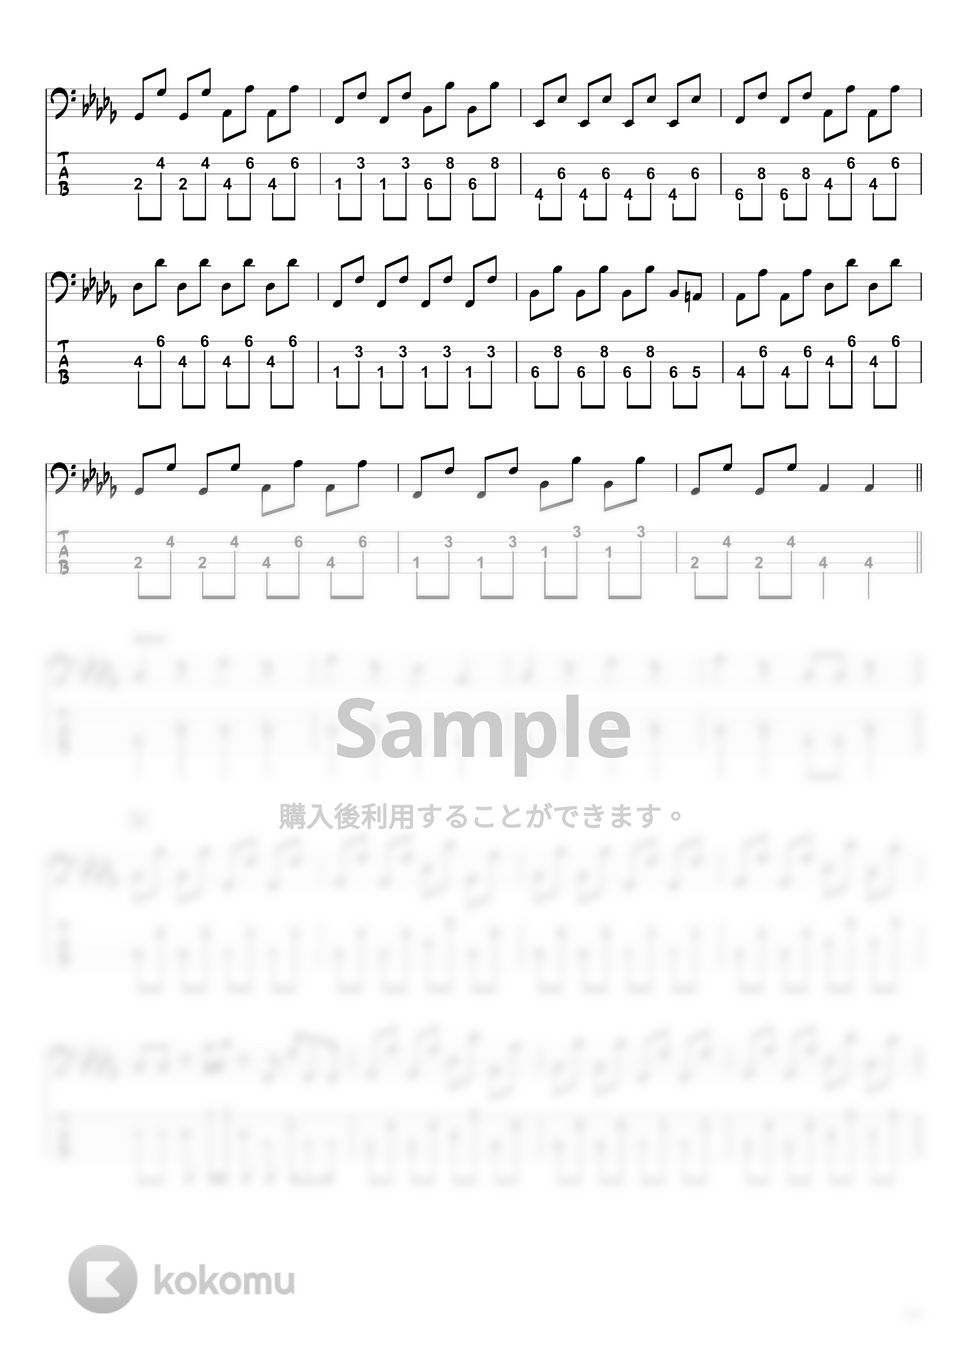 YOASOBI - ハルカ (ベースTAB譜 / ☆5弦ベース対応) by swbass